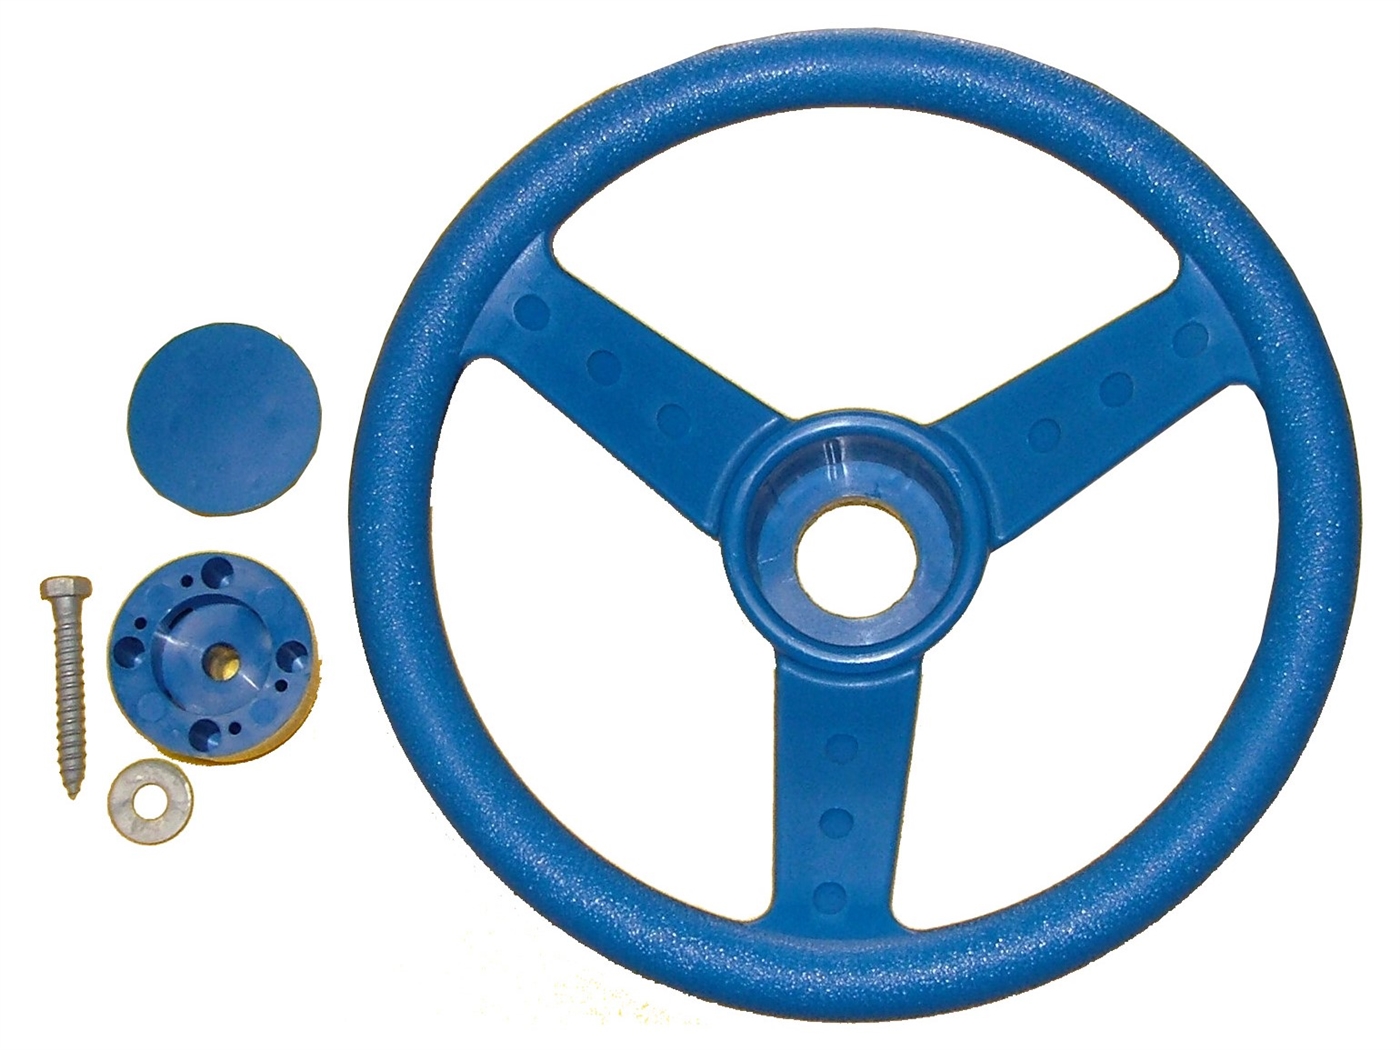 Steering wheel deluxe